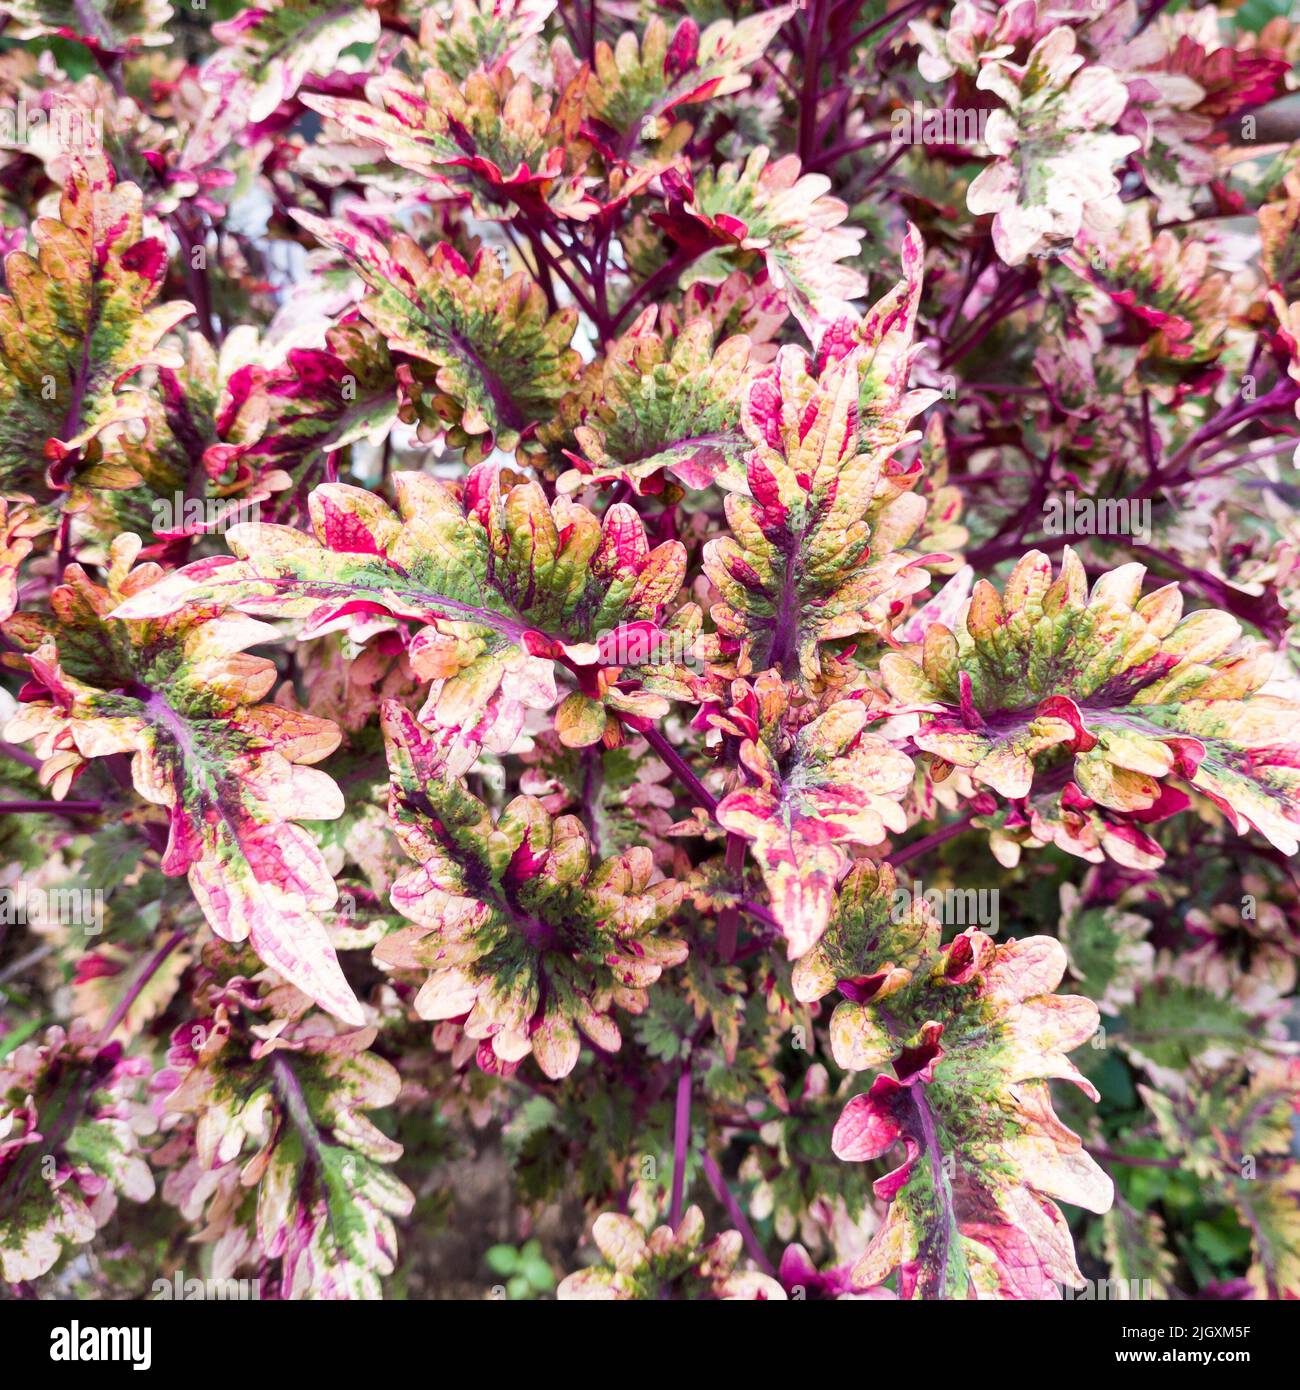 Abstrakter Hintergrund aus farbenfrohen Pflanzenblättern, aufgenommen in geringer Tiefenschärfe, rosa und rötlich gefärbten Naturtapeten oder -Hintergründen Stockfoto